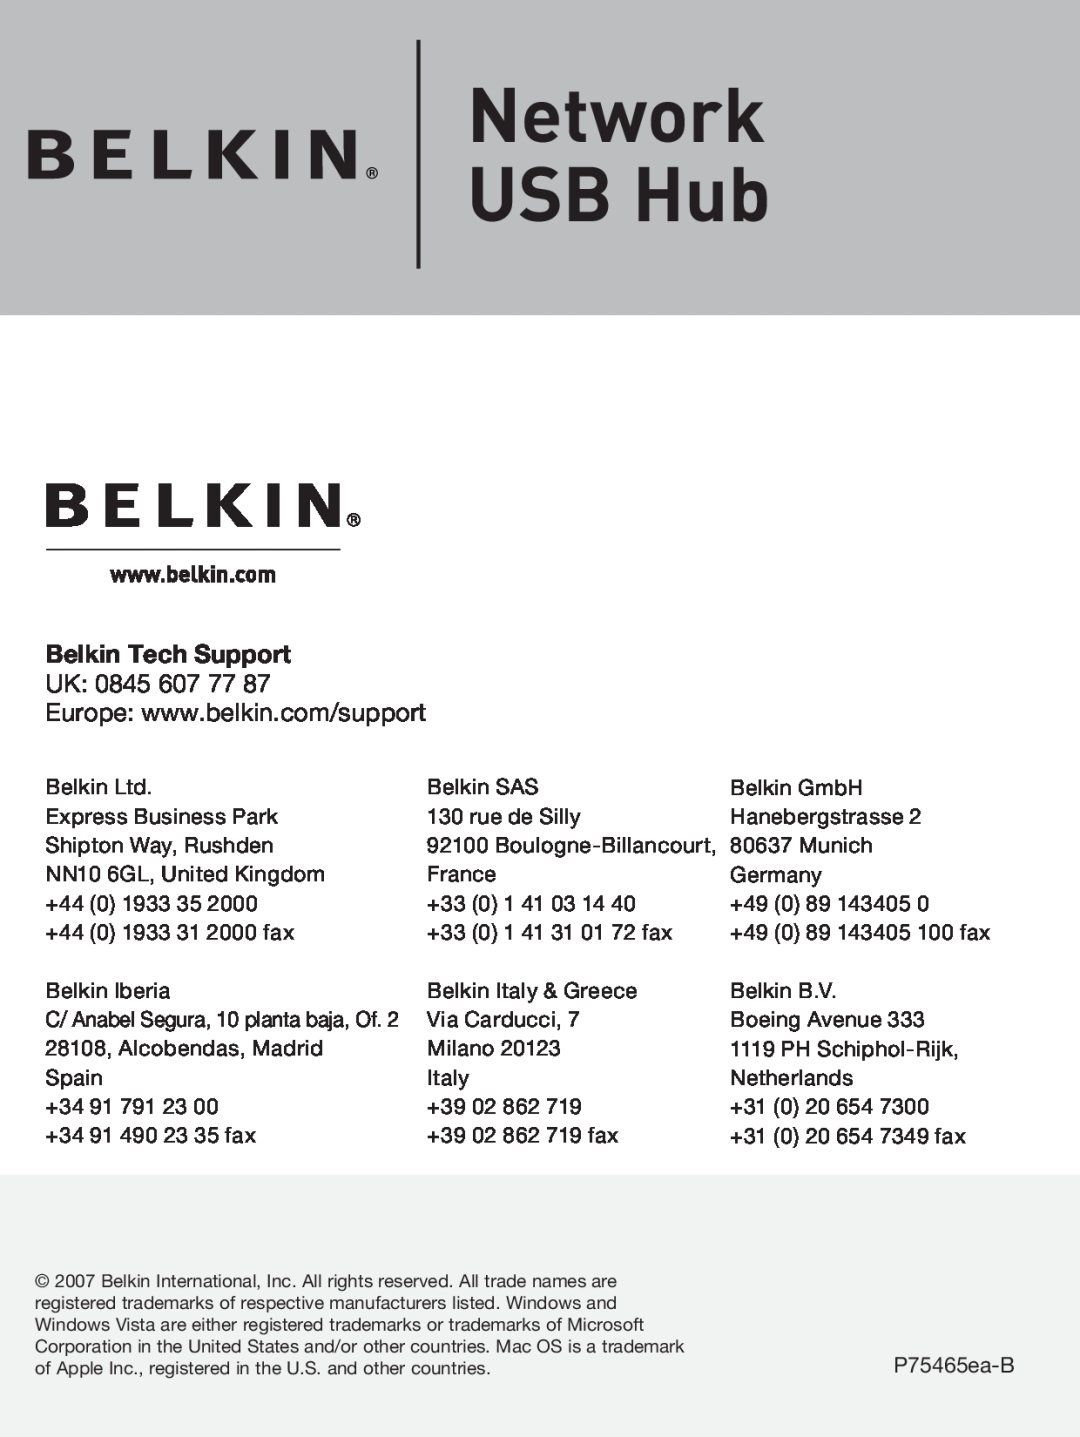 Belkin F5L009 user manual Network USB Hub, Belkin Tech Support, UK 0845 